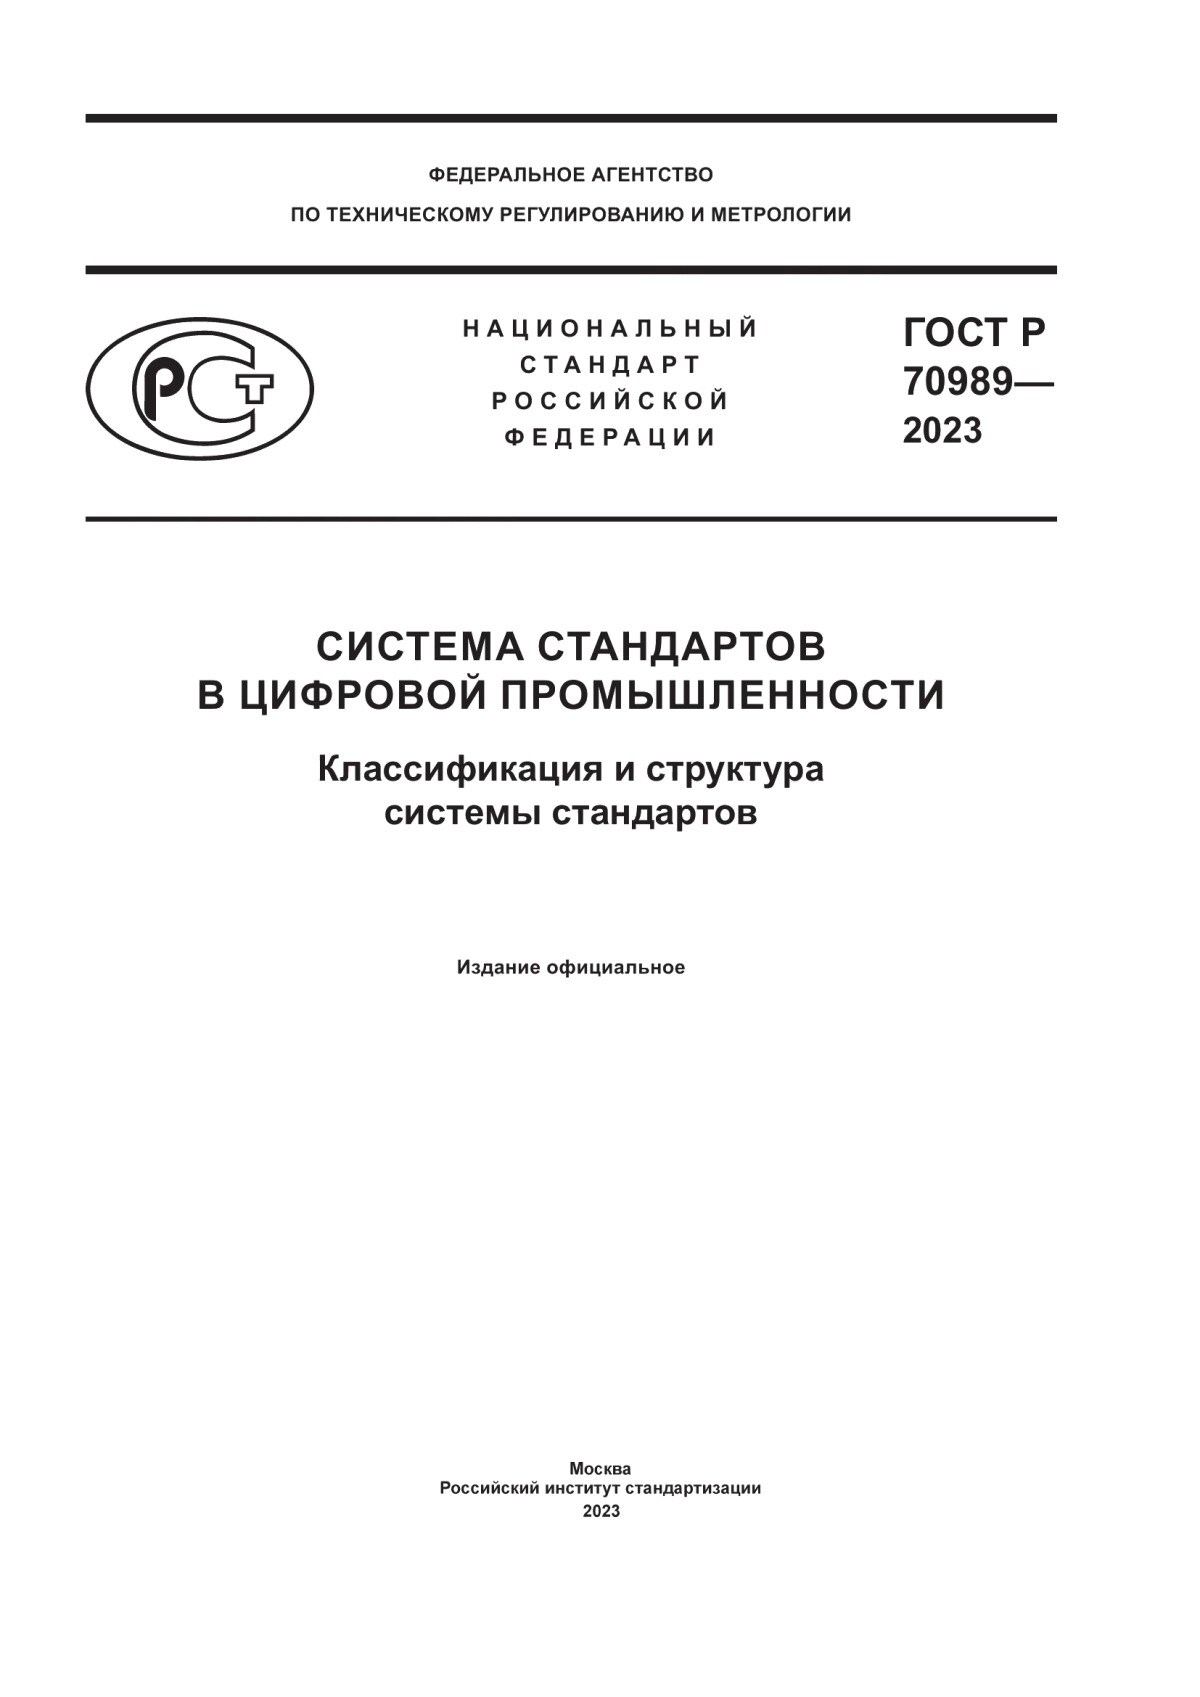 ГОСТ Р 70989-2023 Система стандартов в цифровой промышленности. Классификация и структура системы стандартов